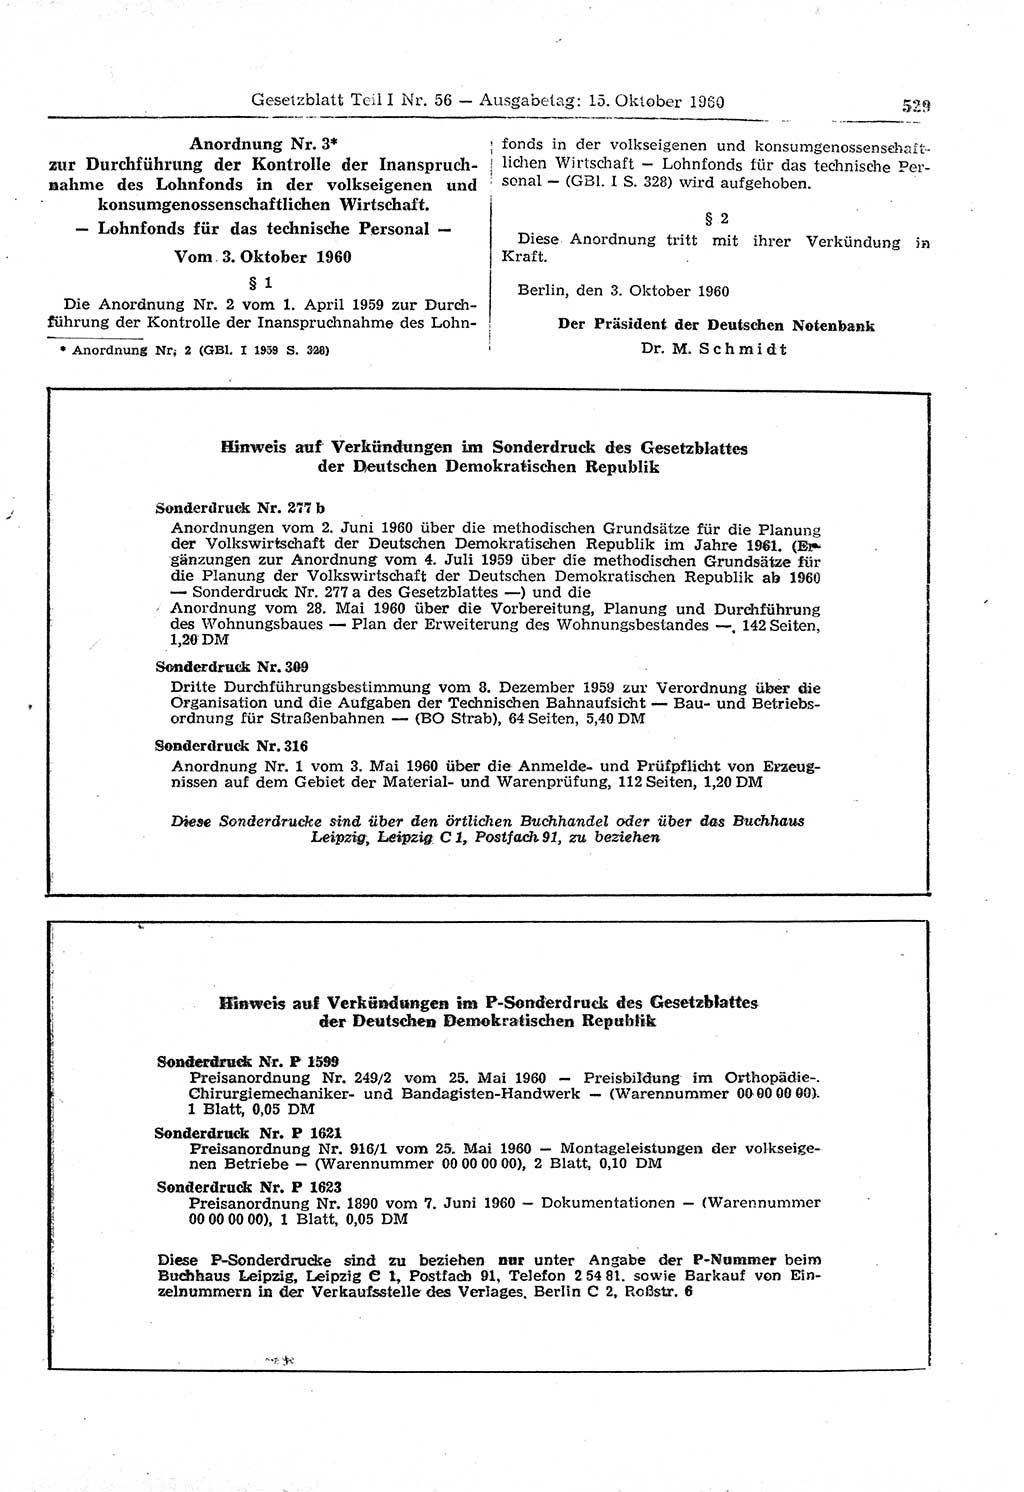 Gesetzblatt (GBl.) der Deutschen Demokratischen Republik (DDR) Teil Ⅰ 1960, Seite 529 (GBl. DDR Ⅰ 1960, S. 529)